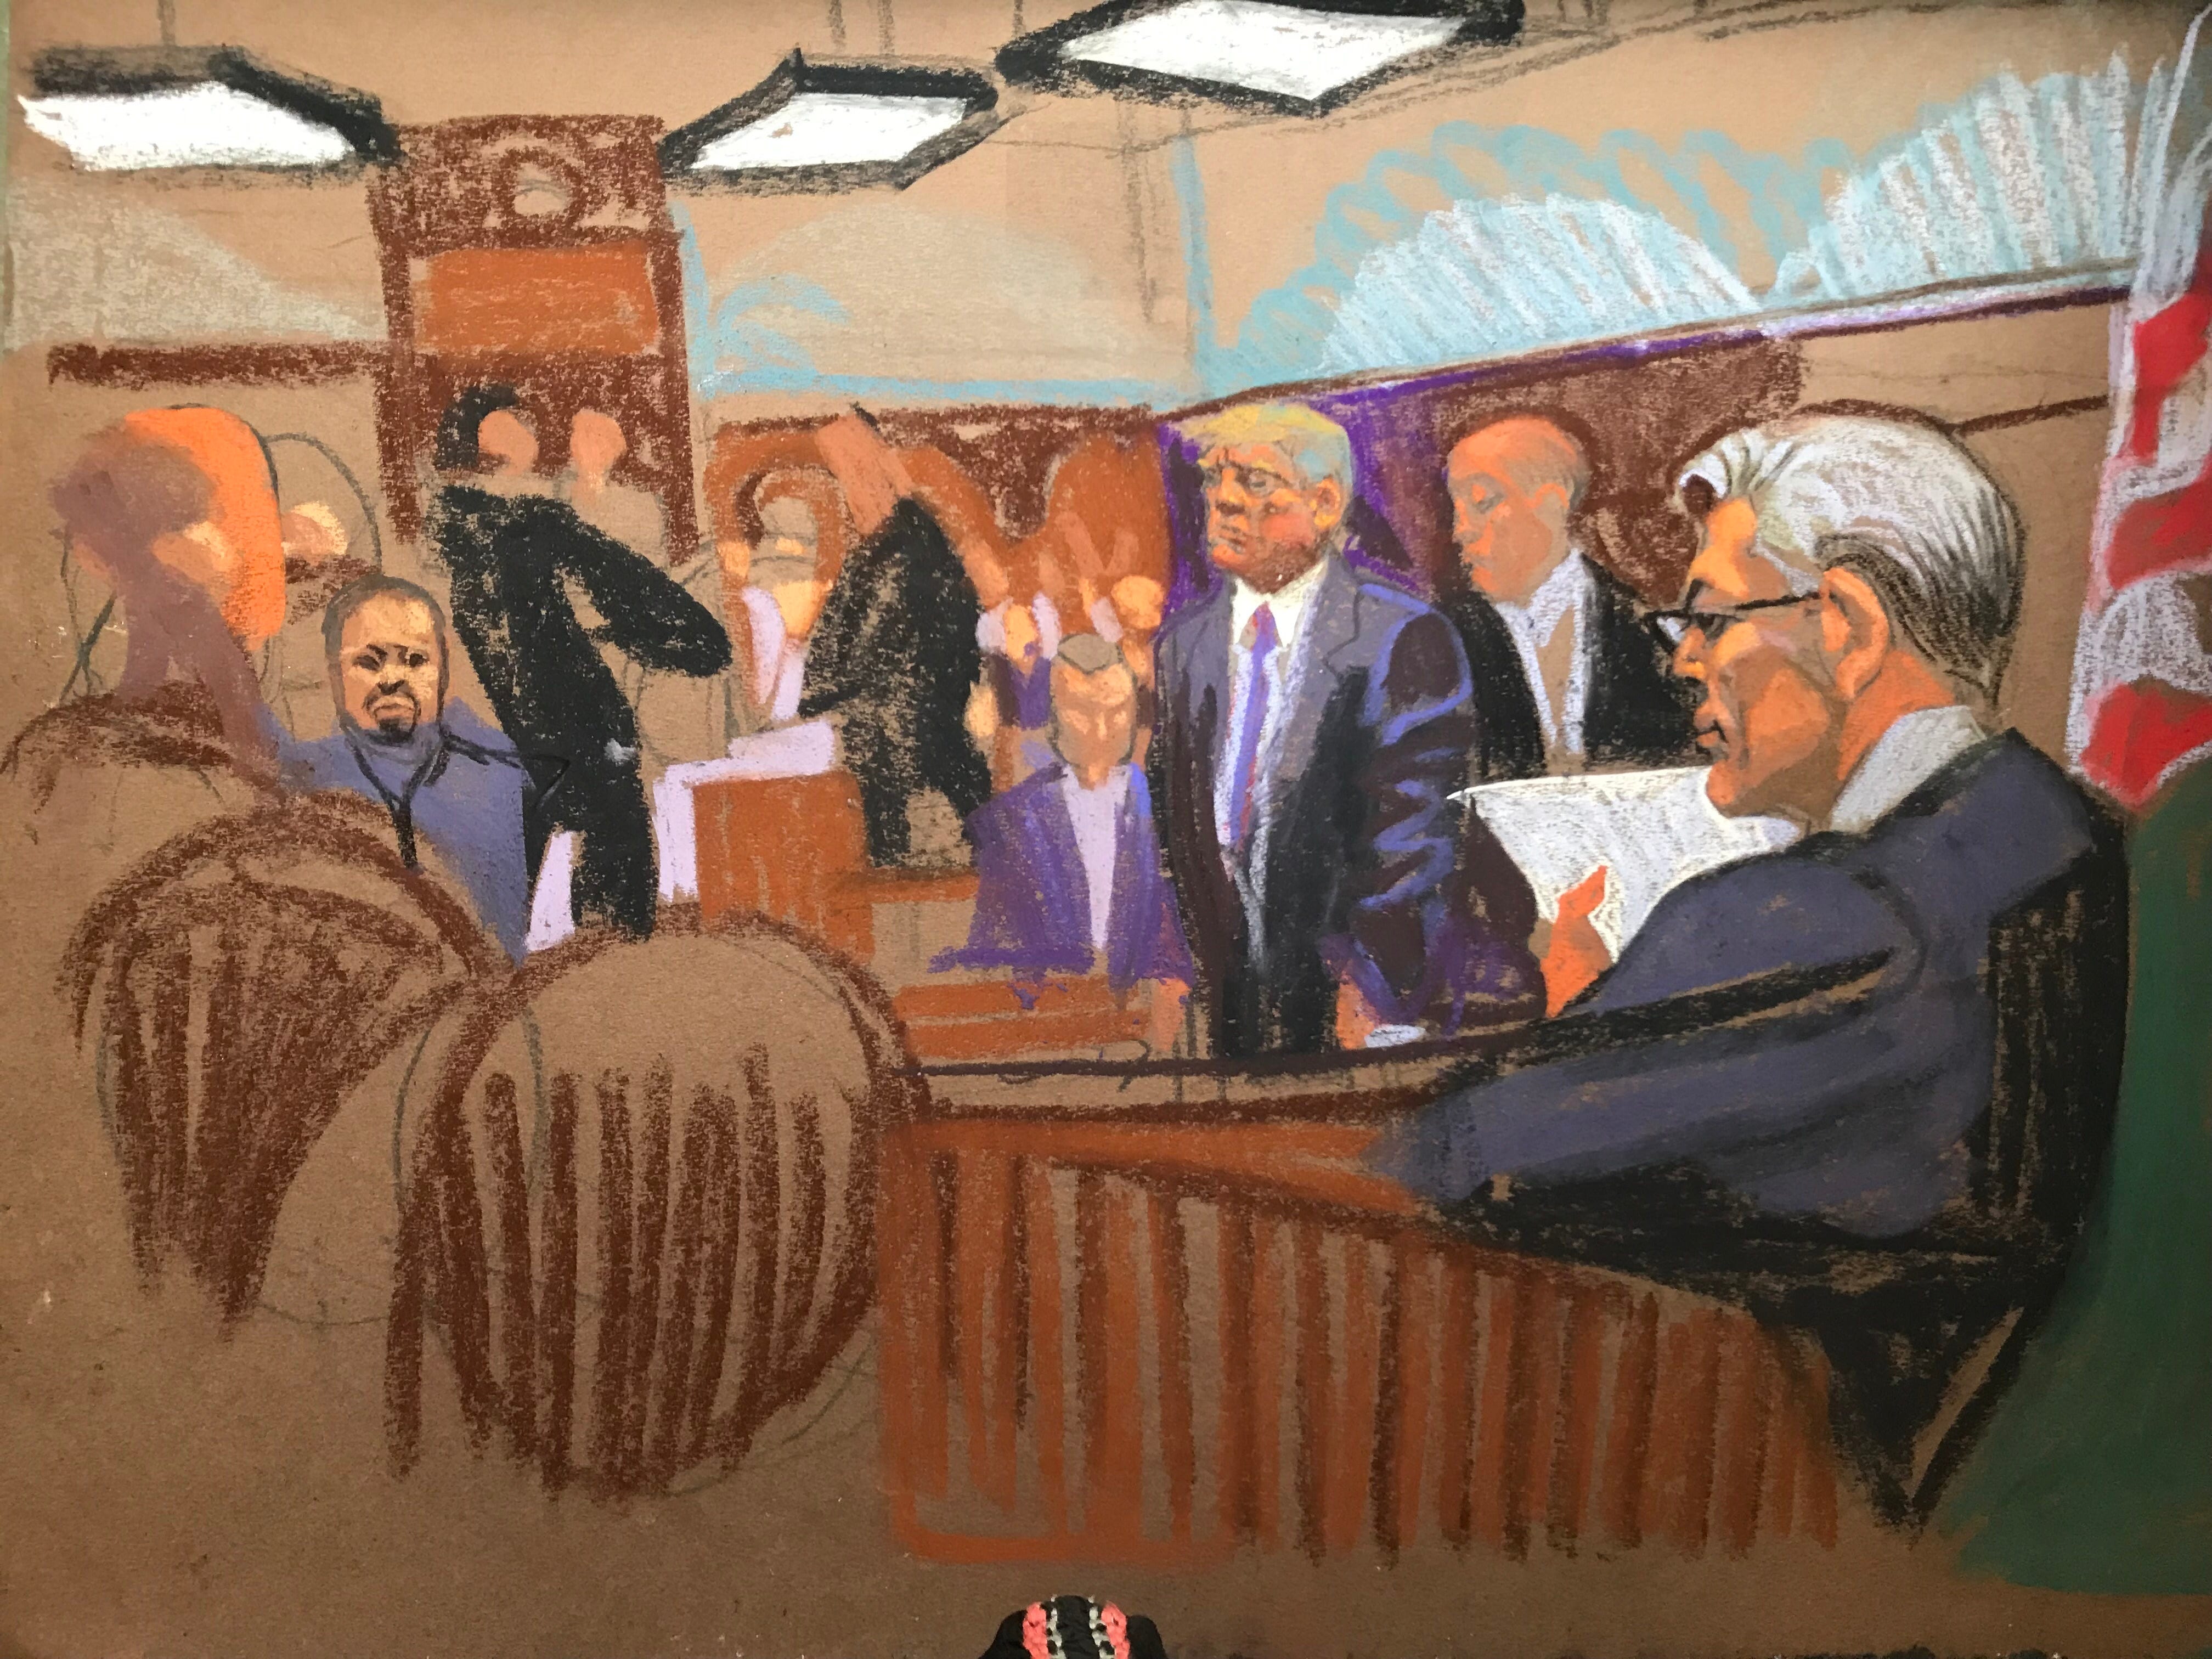 Eine Gerichtsskizze von Donald Trump, der zwischen anderen Menschen im Gerichtssaal steht.